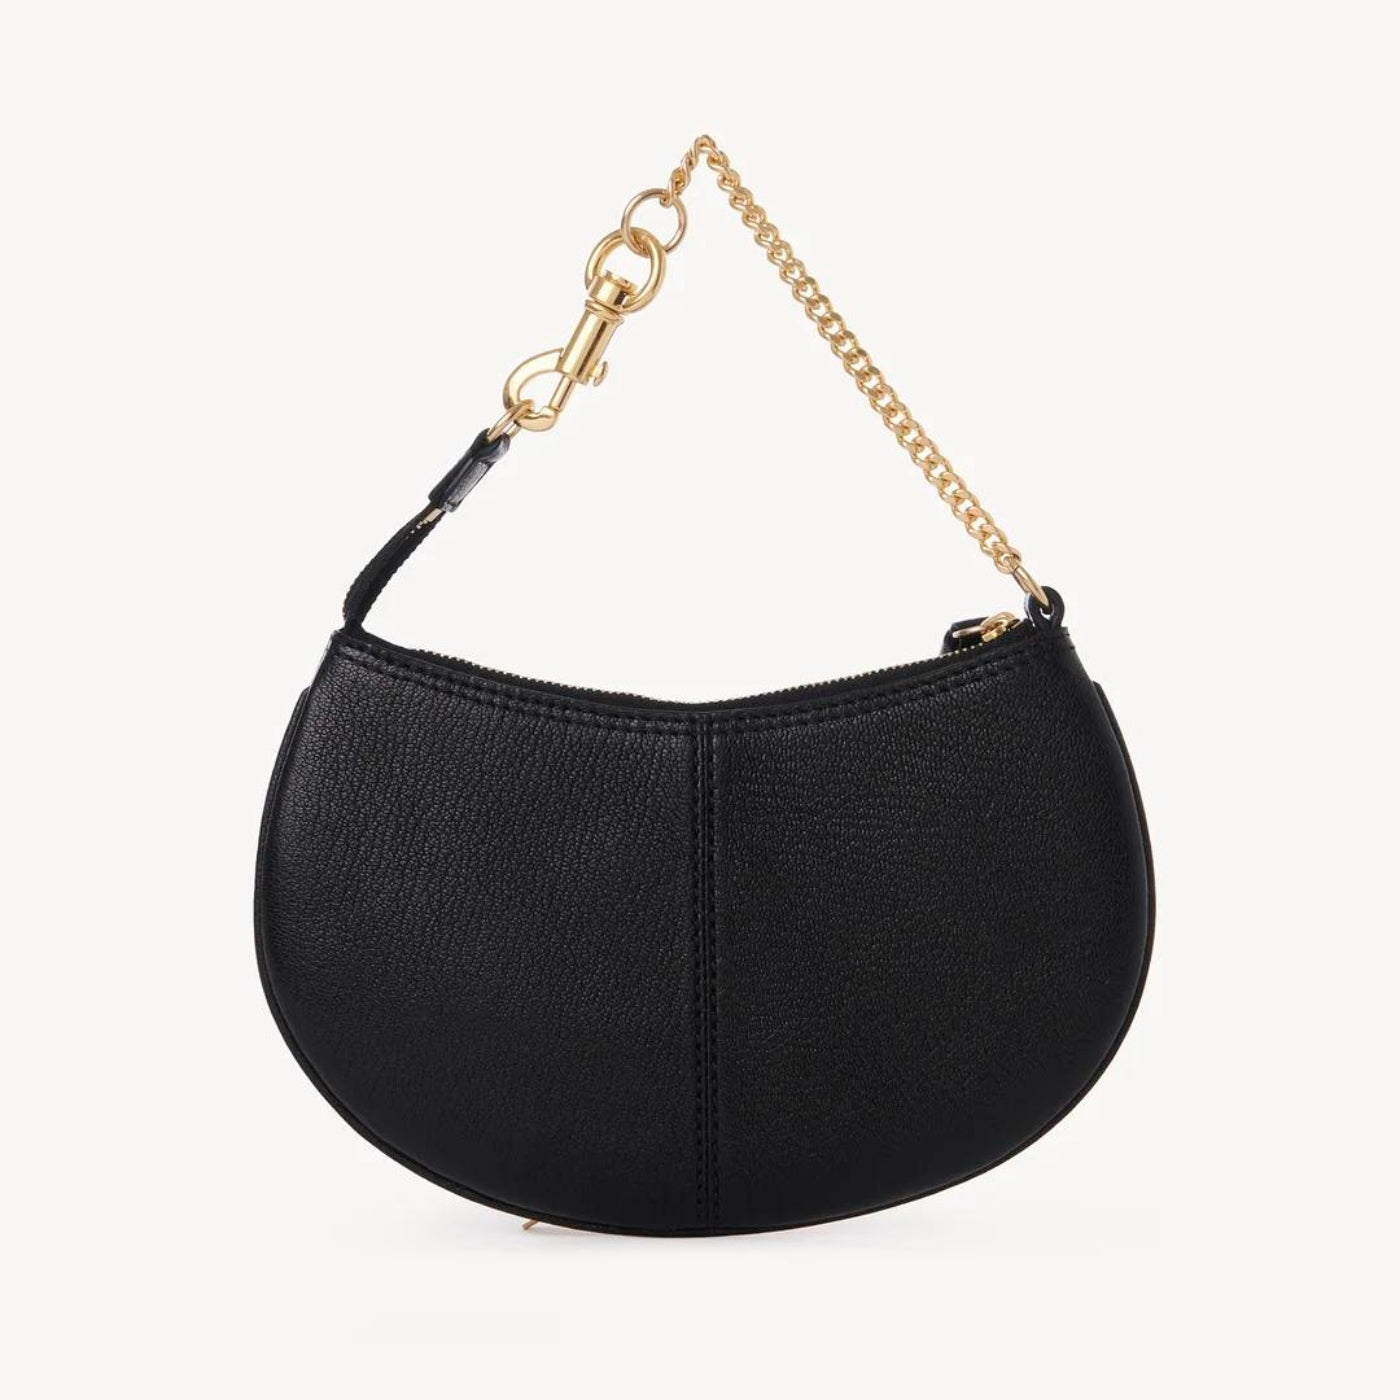 Hana Clutch Bag in Black Handbags SEE BY CHLOE - LOLAMIR